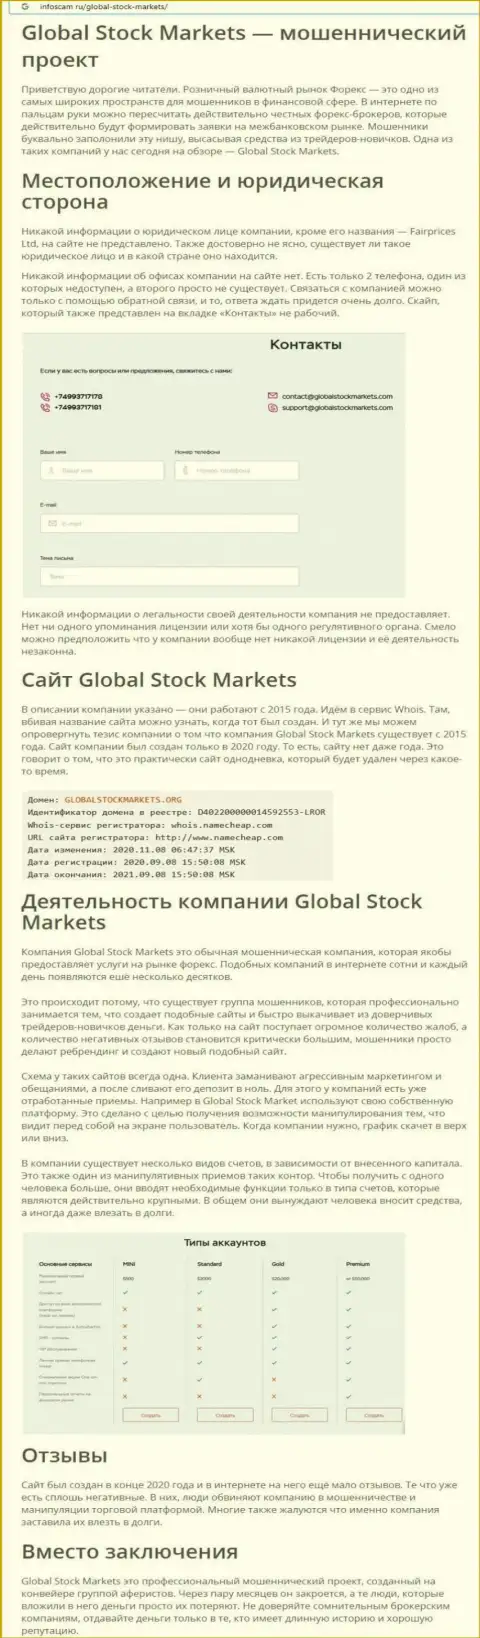 НЕ ОПАСНО ли взаимодействовать с компанией Global Stock Markets ? Обзор мошеннических комбинаций компании